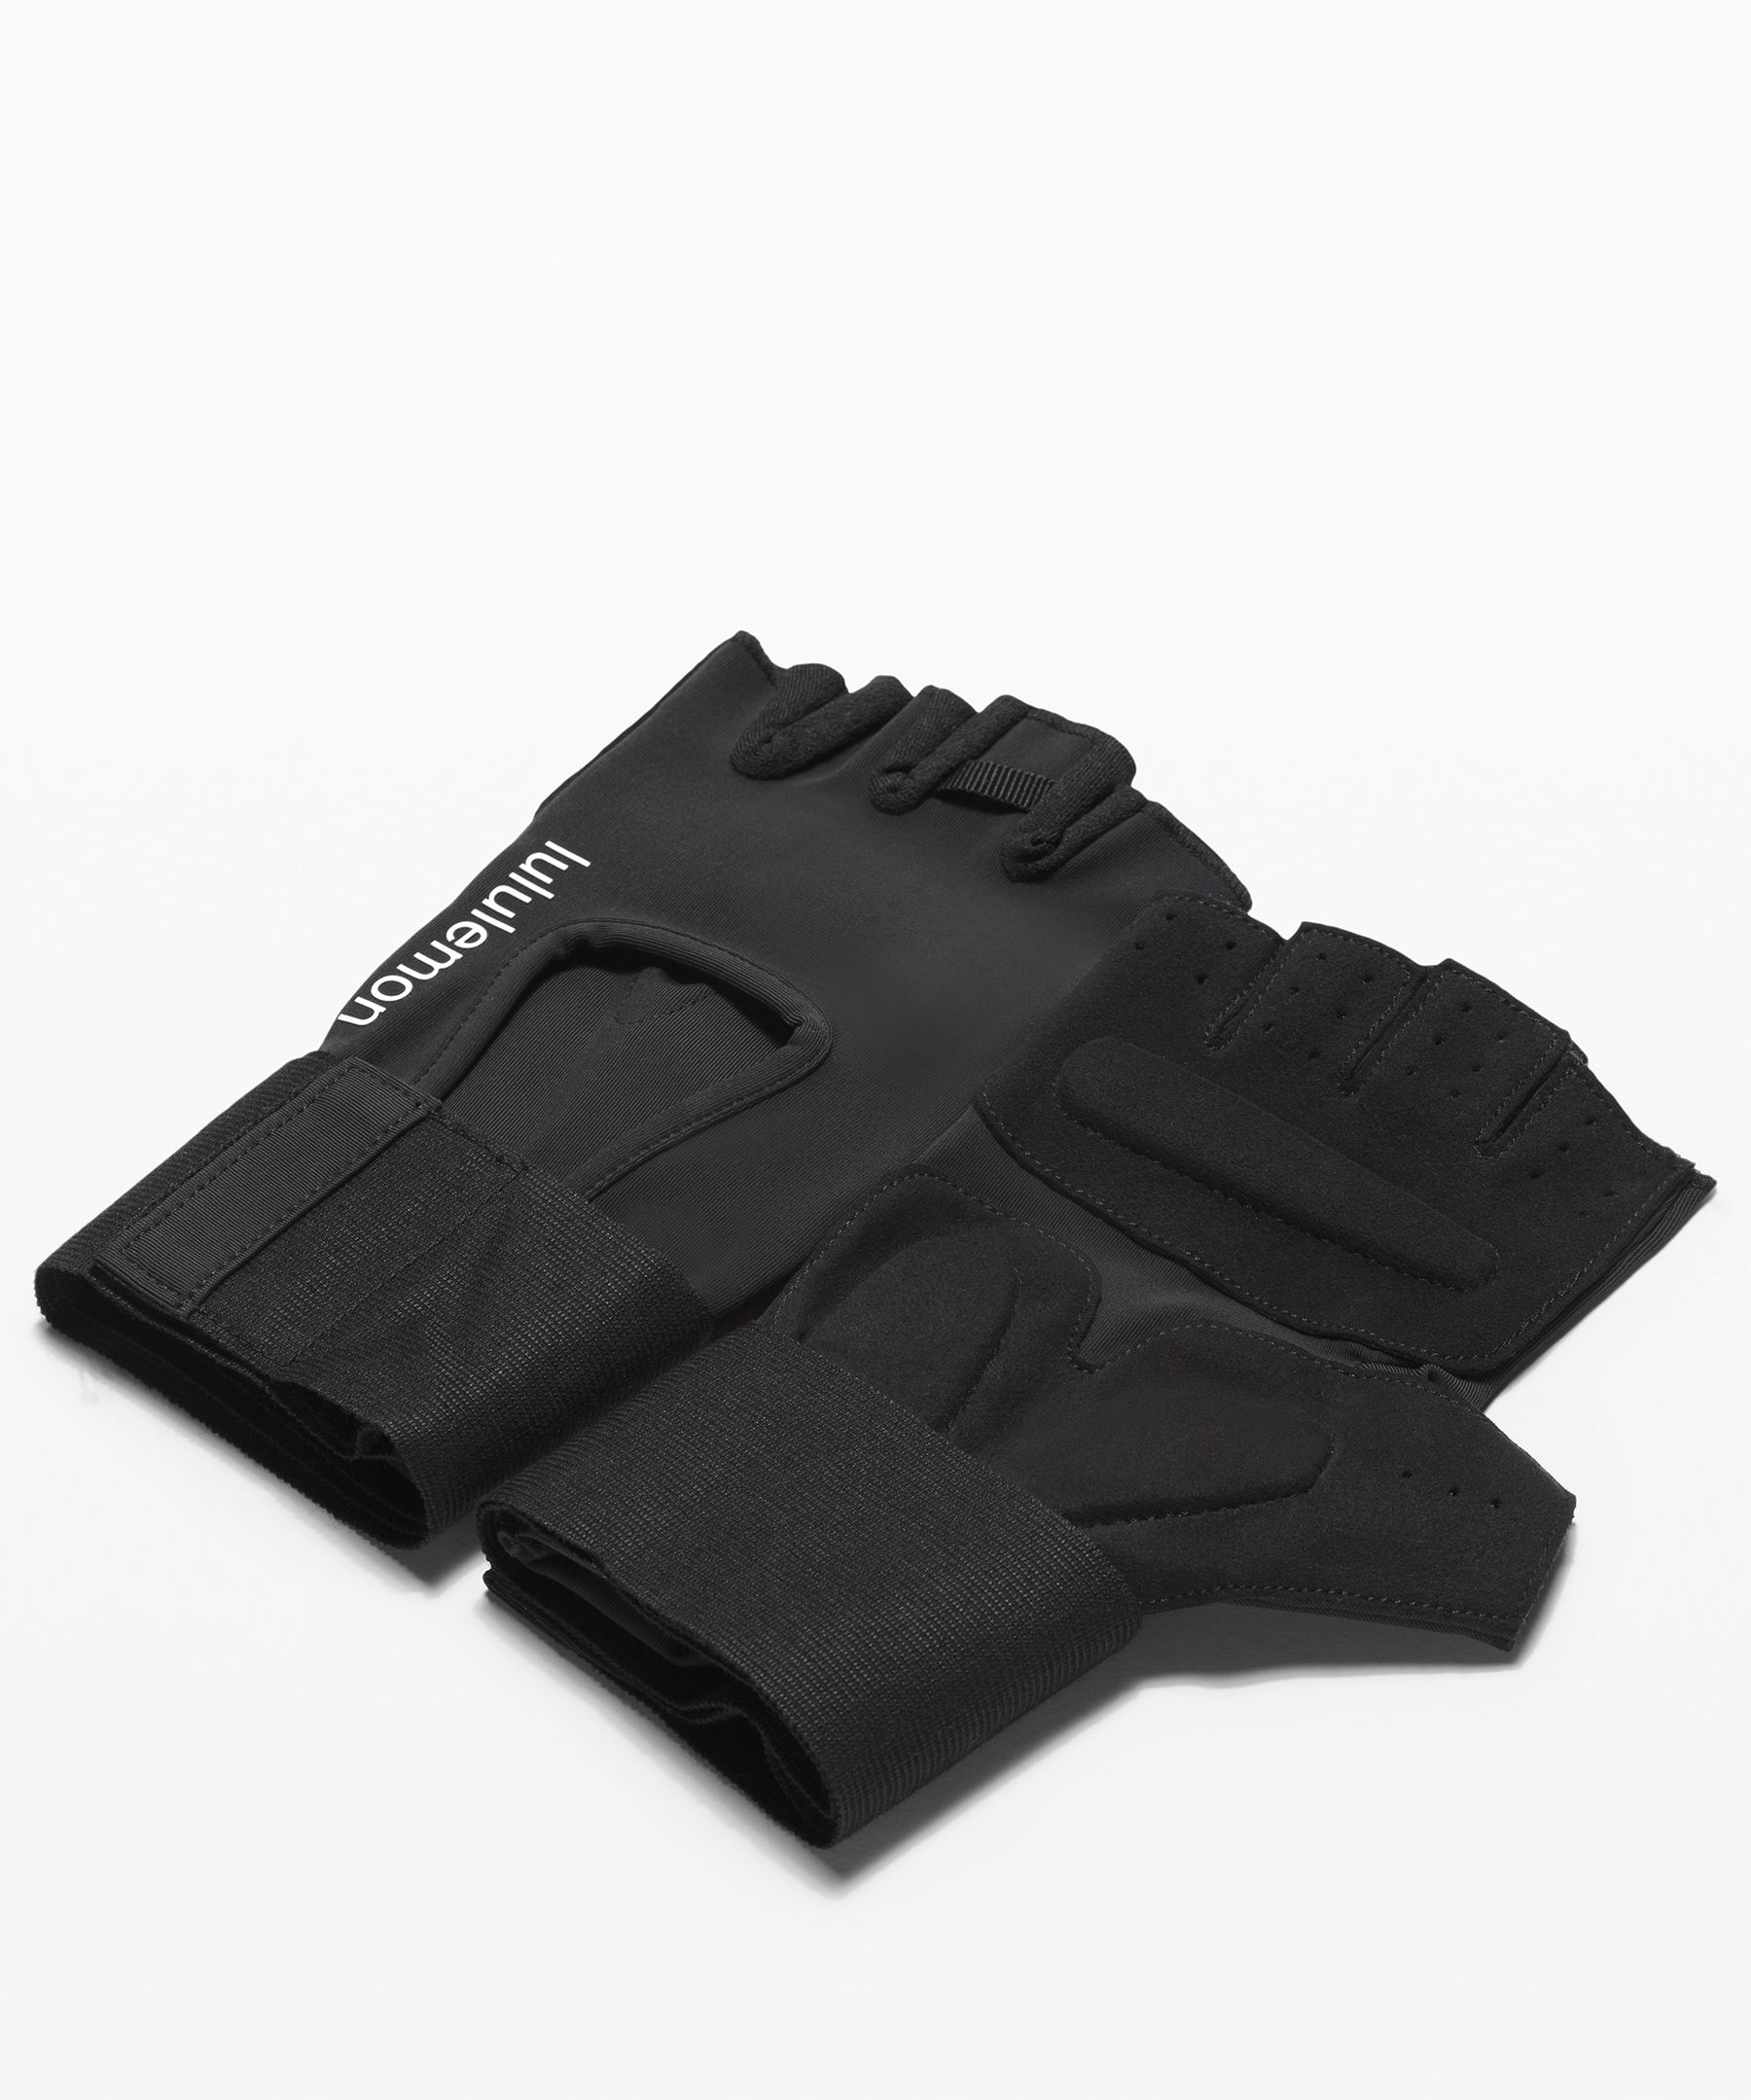 lululemon fingerless gloves